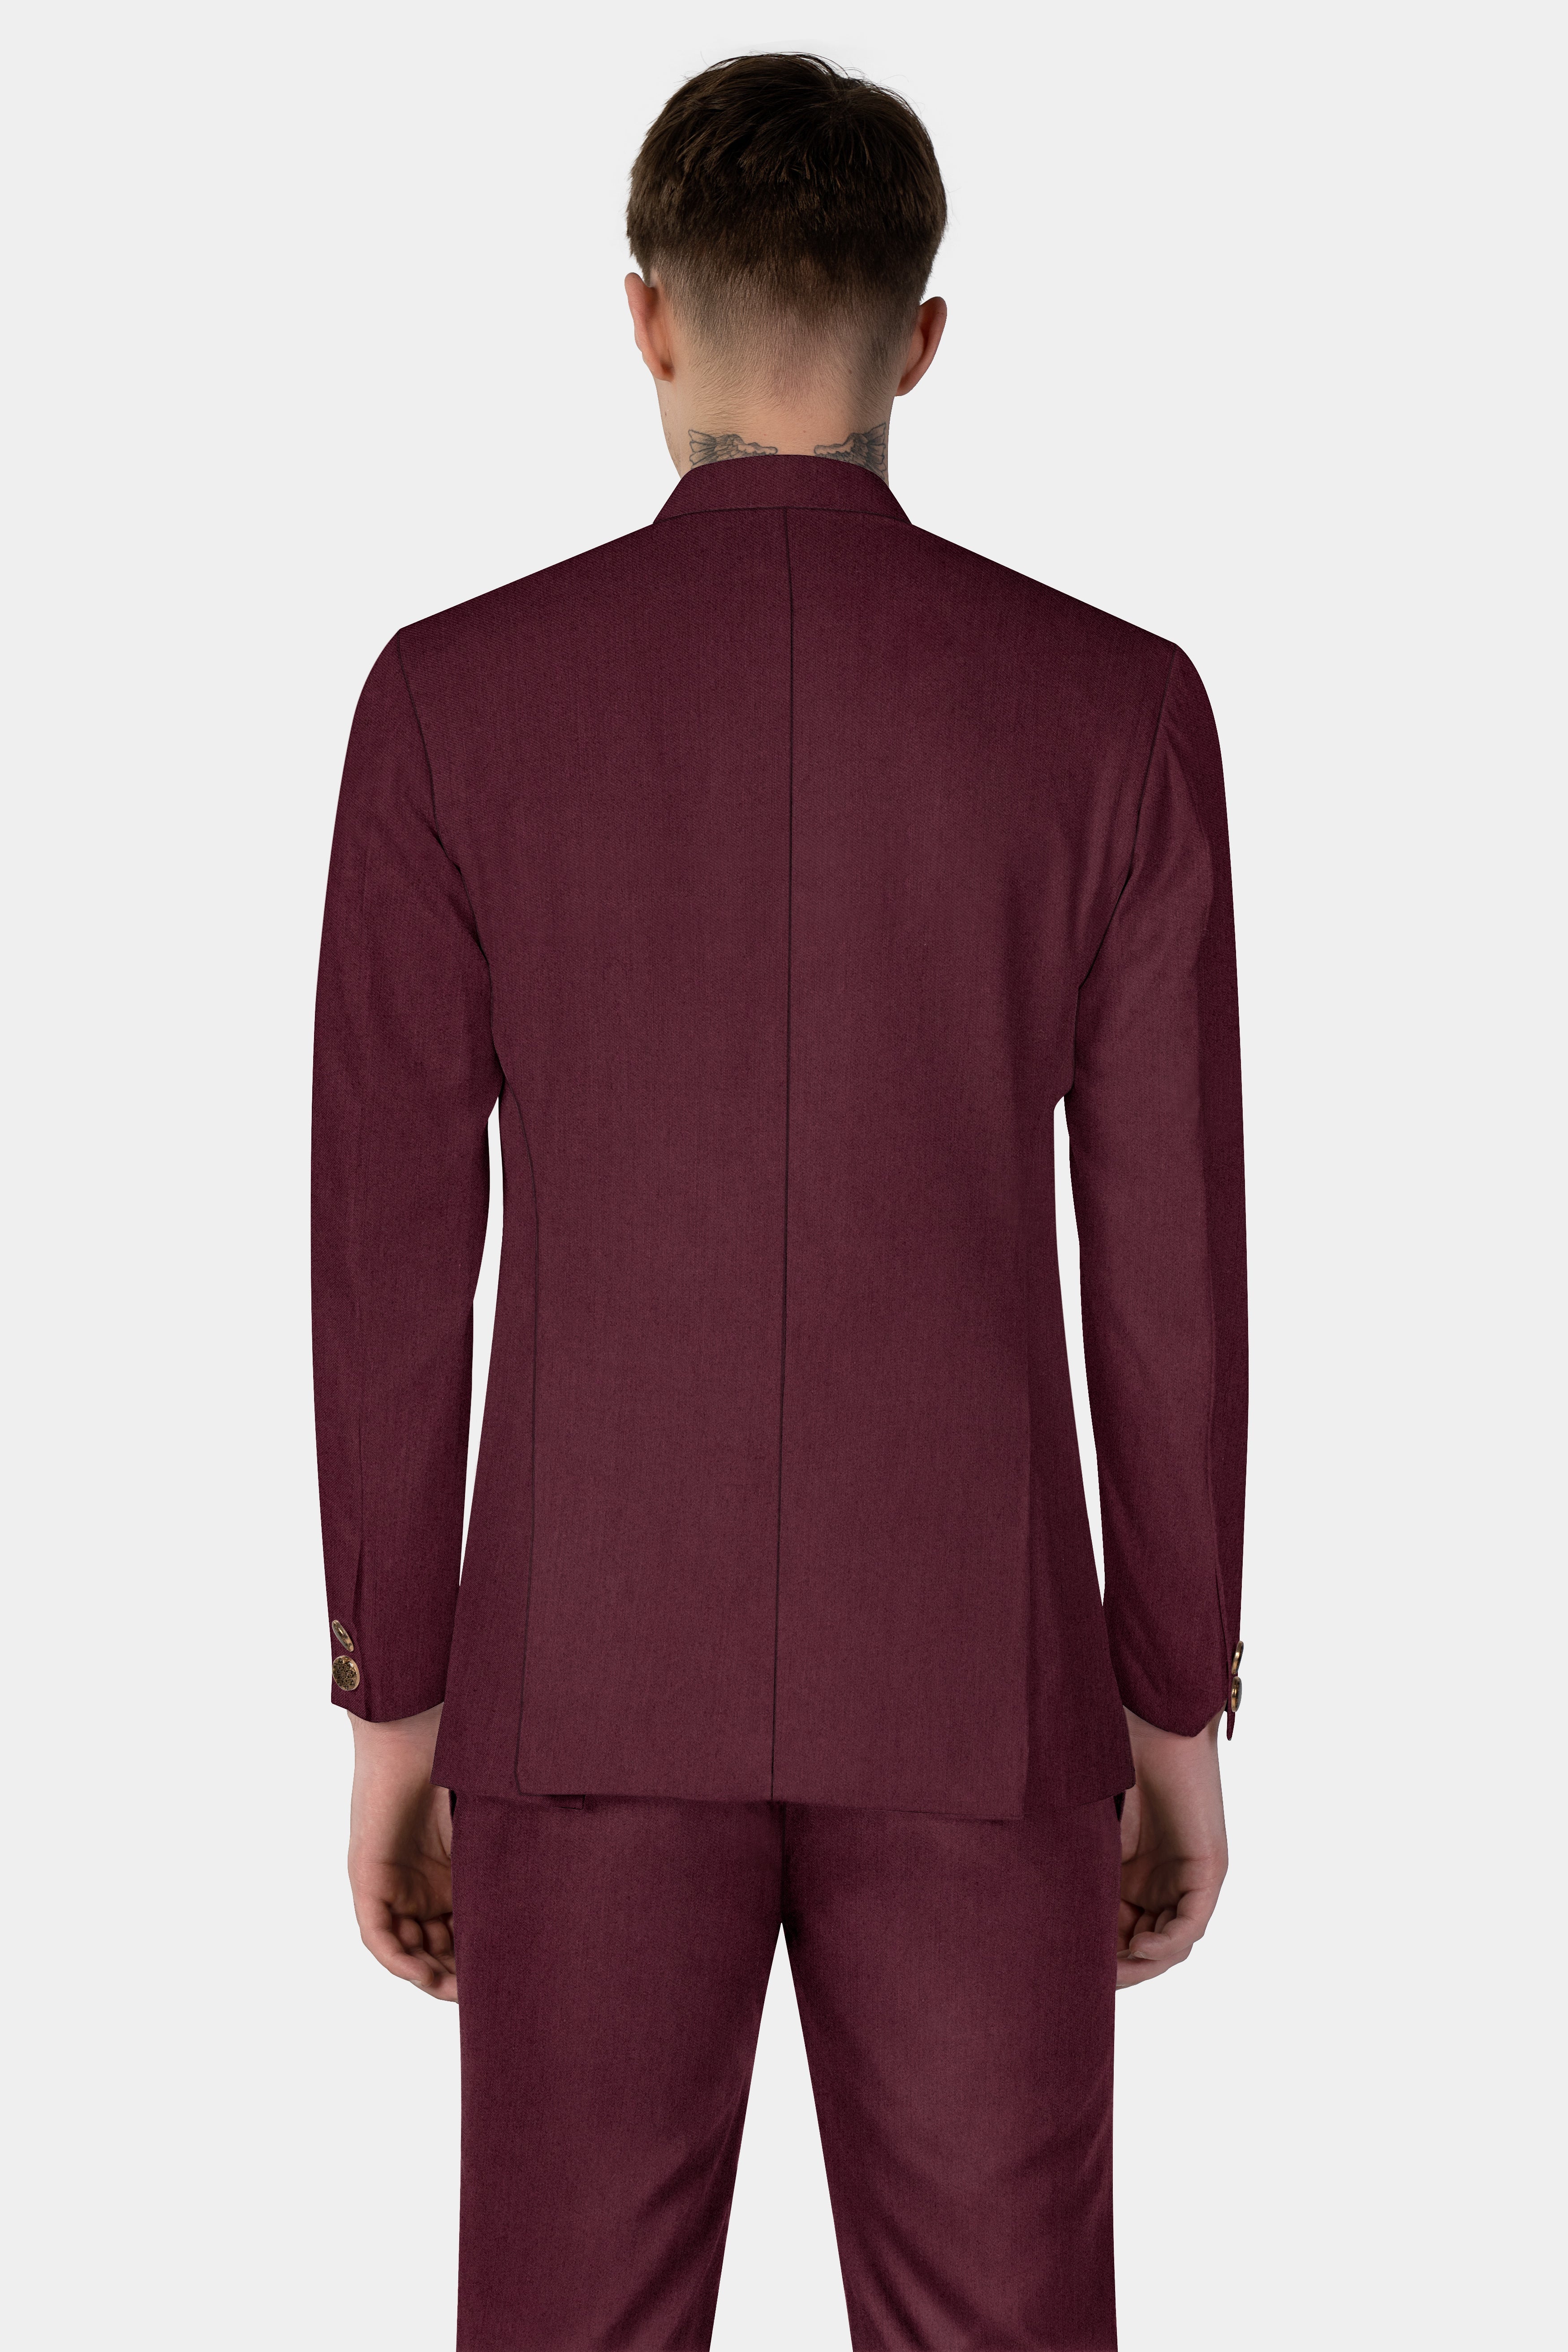 Tamarind Maroon Wool Blend Bandhgala Suit